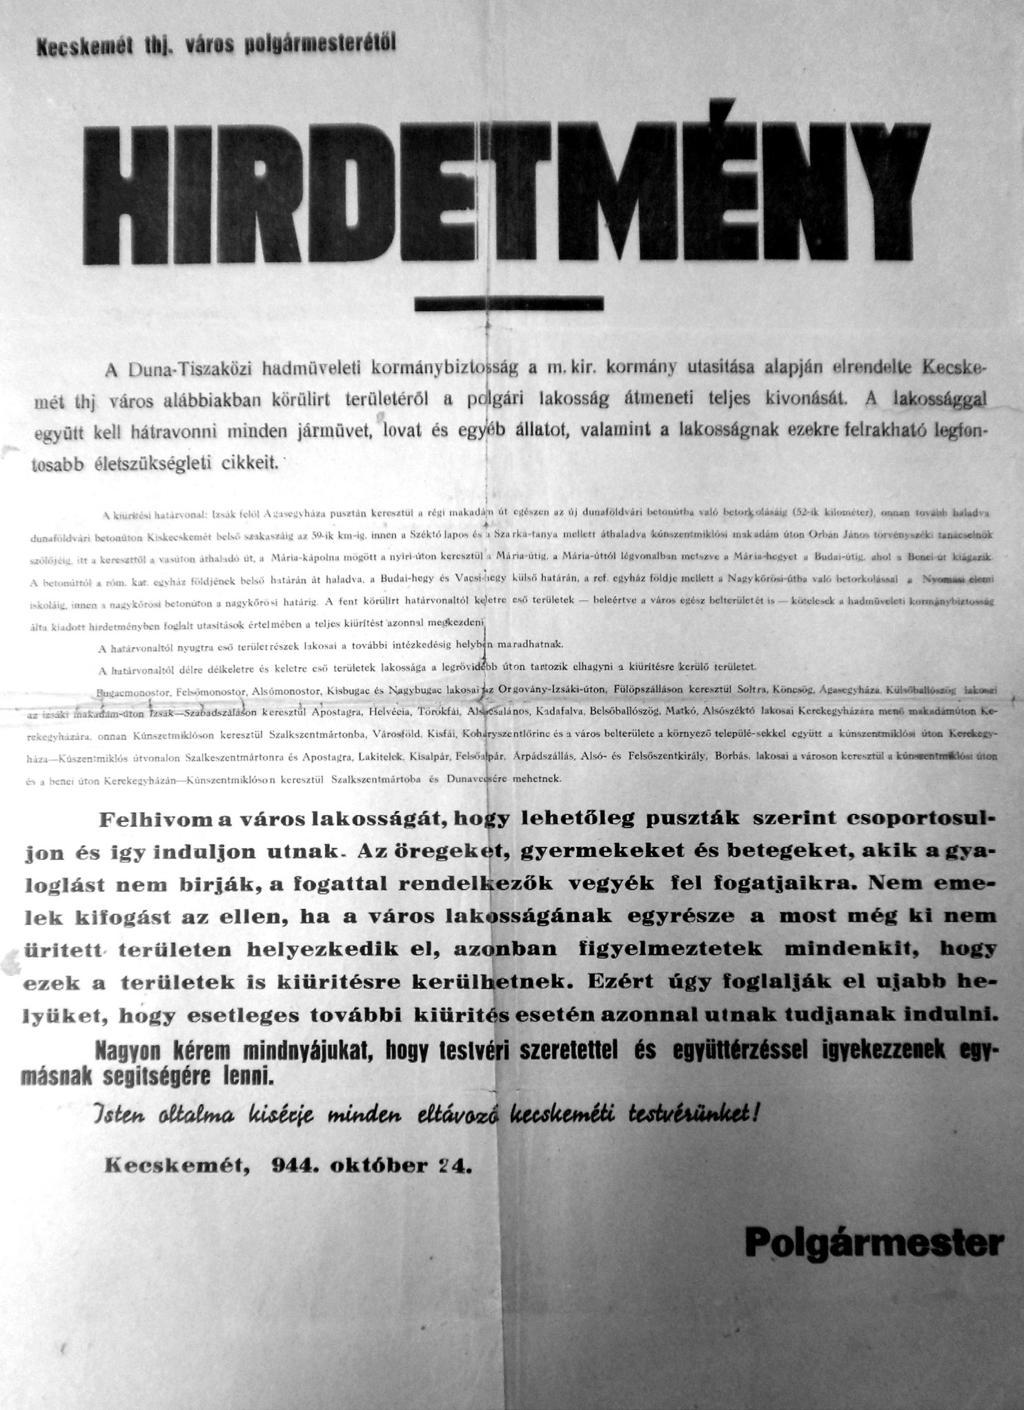 Hajagos Csaba 30. kép A polgármester hirdetménye a kiürítésről. Kecskemét, 1944. október 24. 1971, 70.